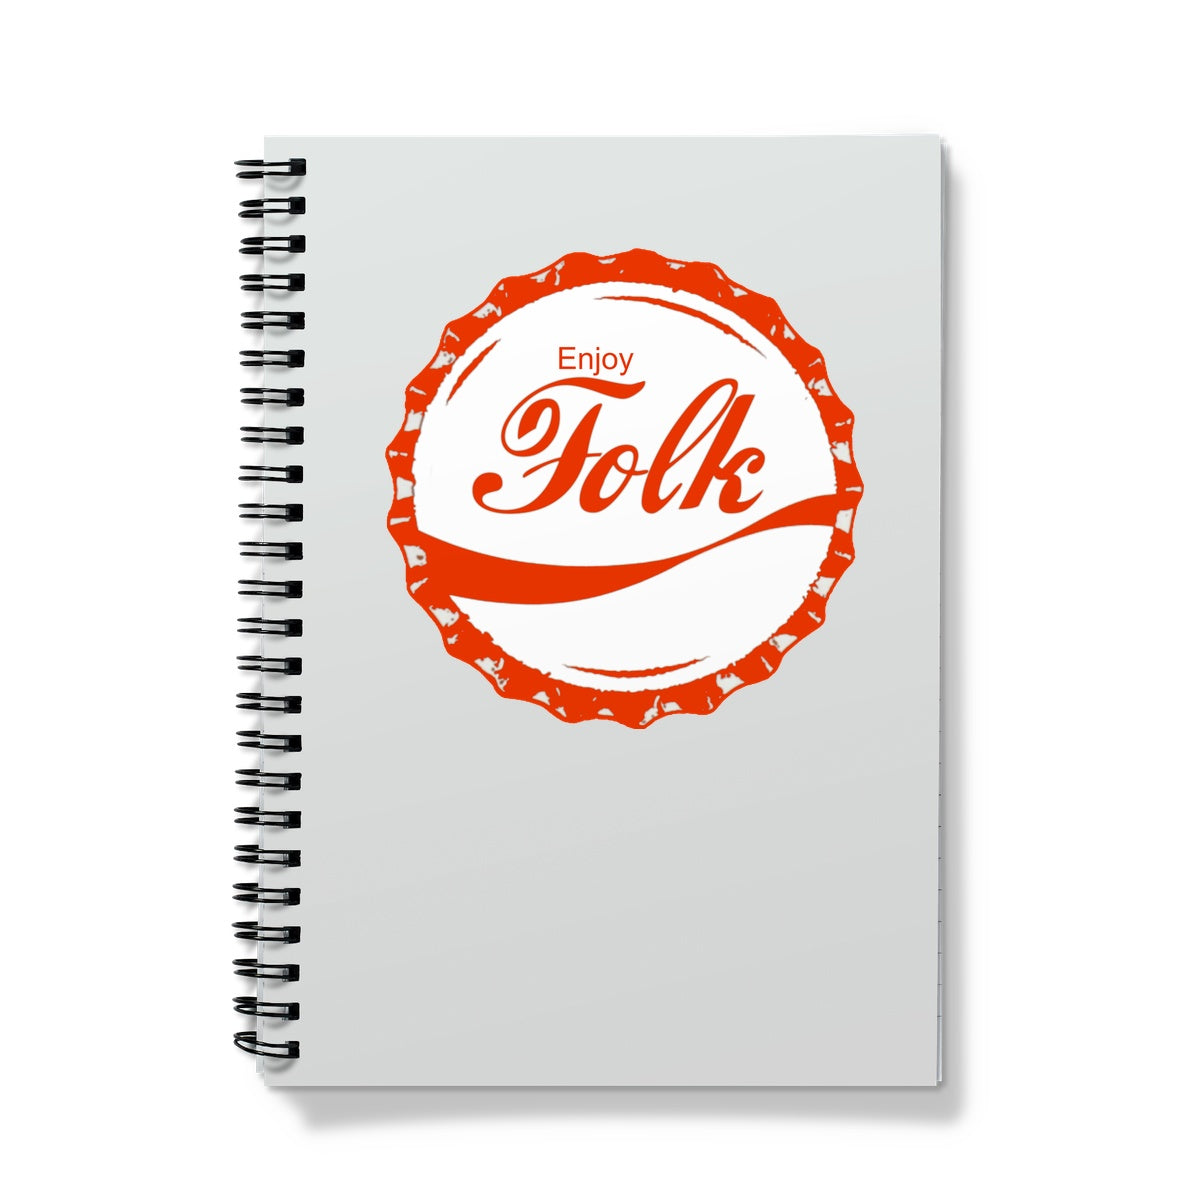 Enjoy Folk Notebook